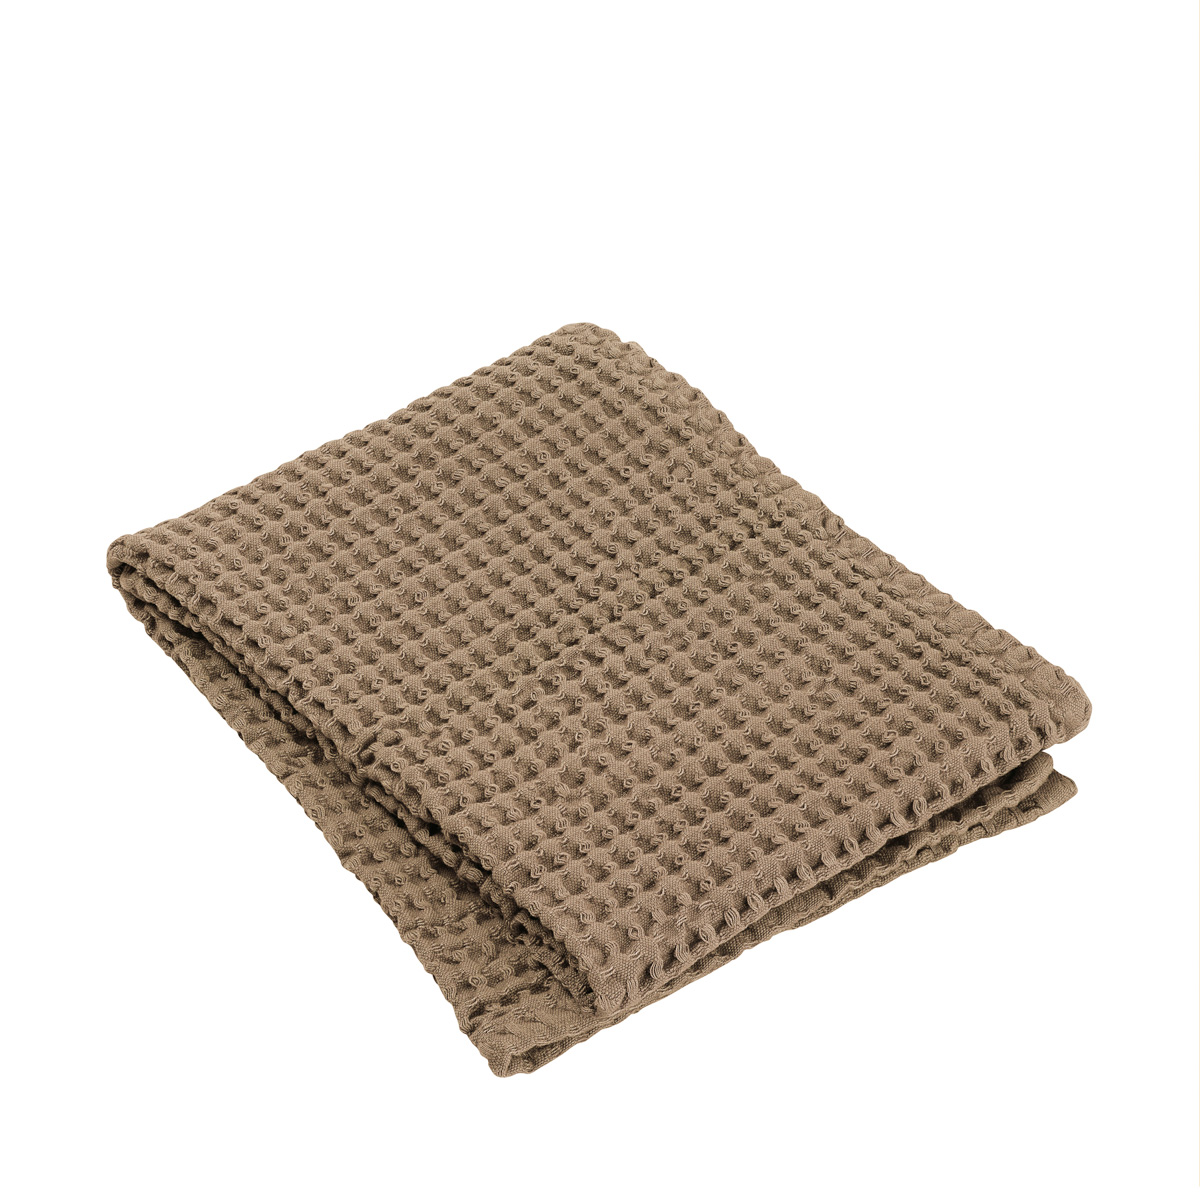 Handtuch -CARO- Tan 50 x 100 cm, Features: text Waffle Piquee, Ökotex. Material: Baumwolle. Von Blomus.